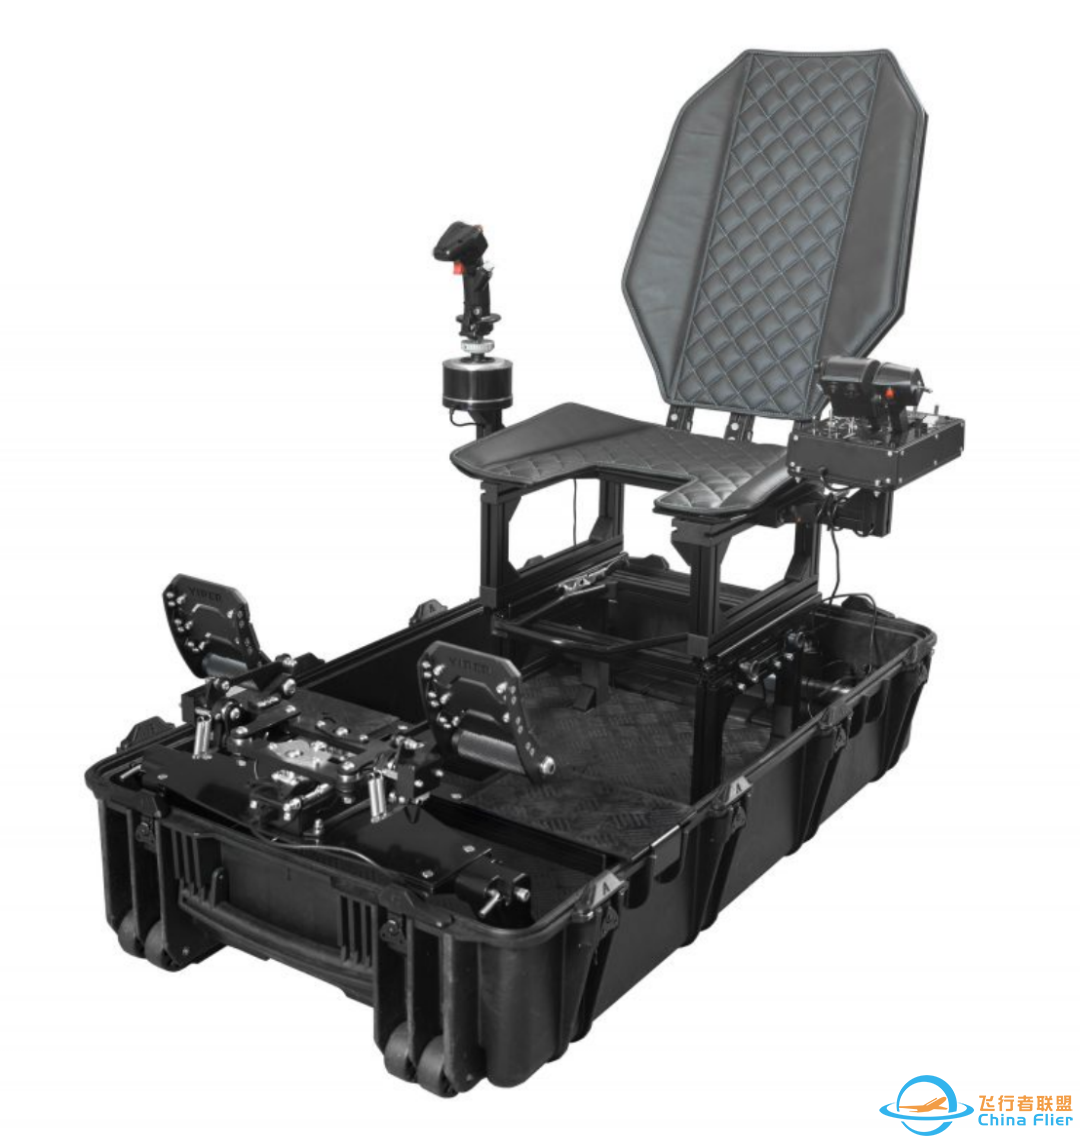 头显制造商Vrgineers提供便携且价格低廉的VR飞行战斗模拟器-1657 